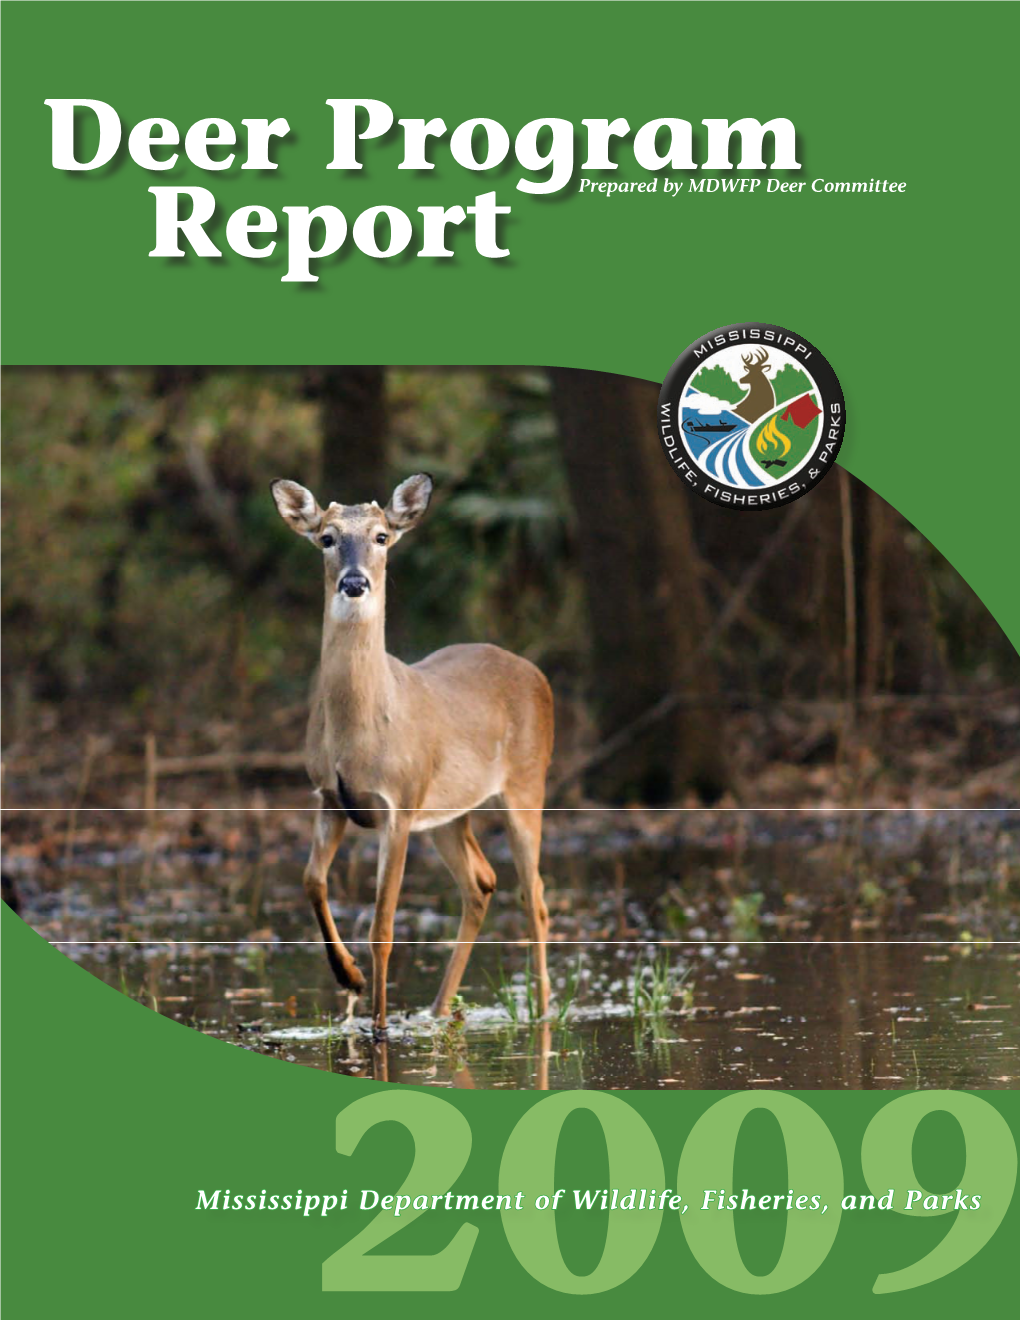 Deer Program Report Prepared by MDWFP Deer Committee